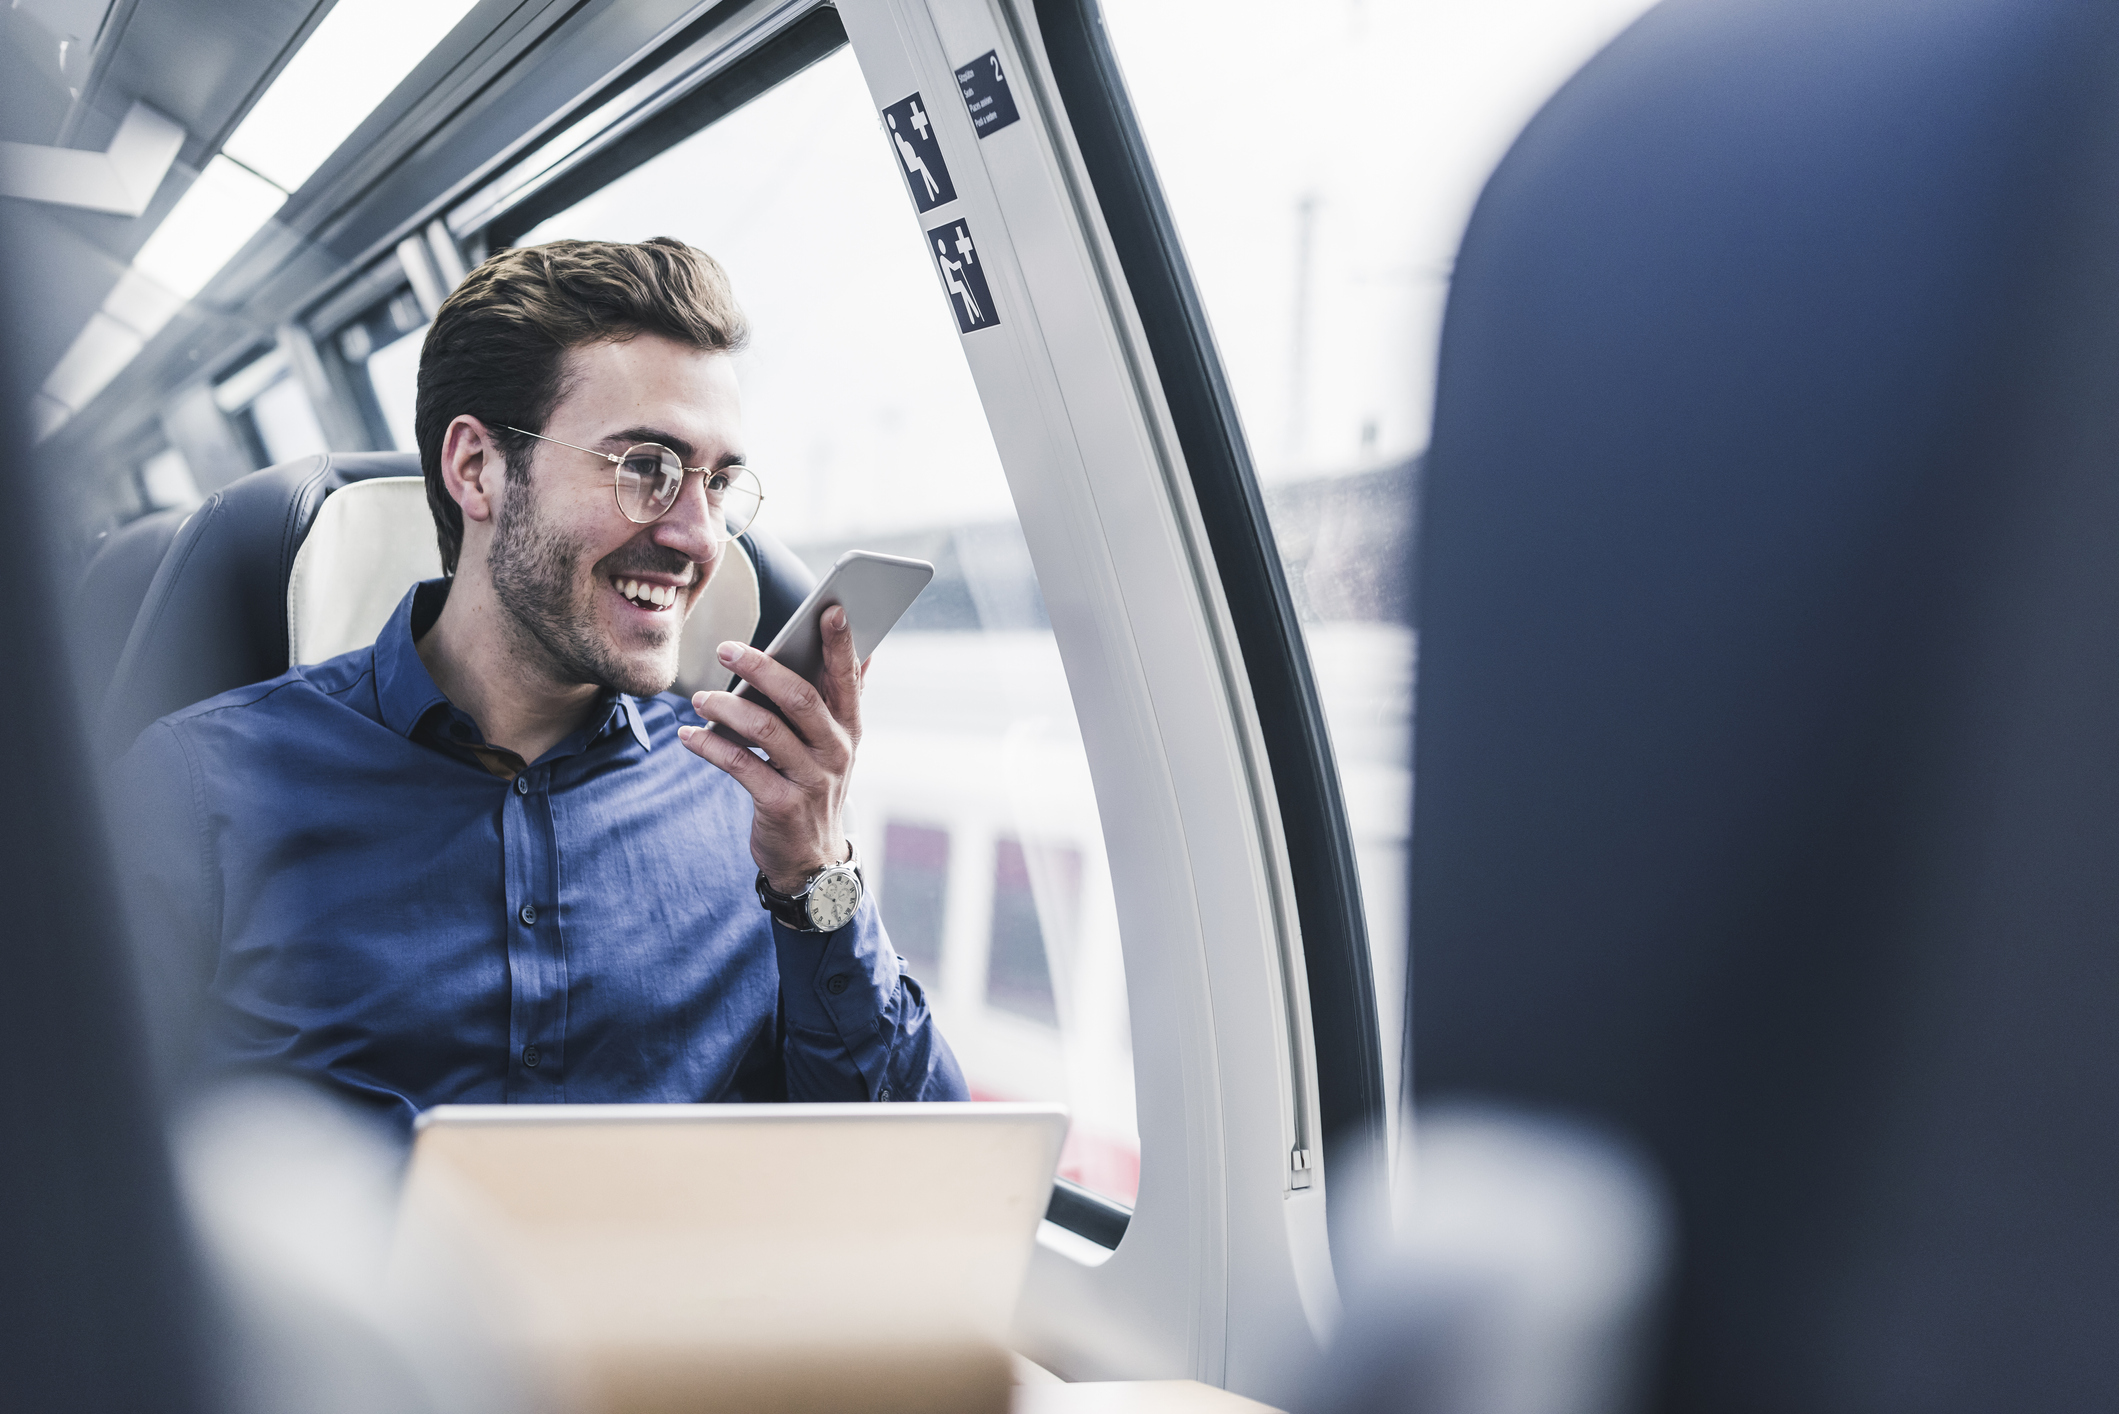 Mann telefoniert im Zug - Beispiel für Fixed Mobile Convergence